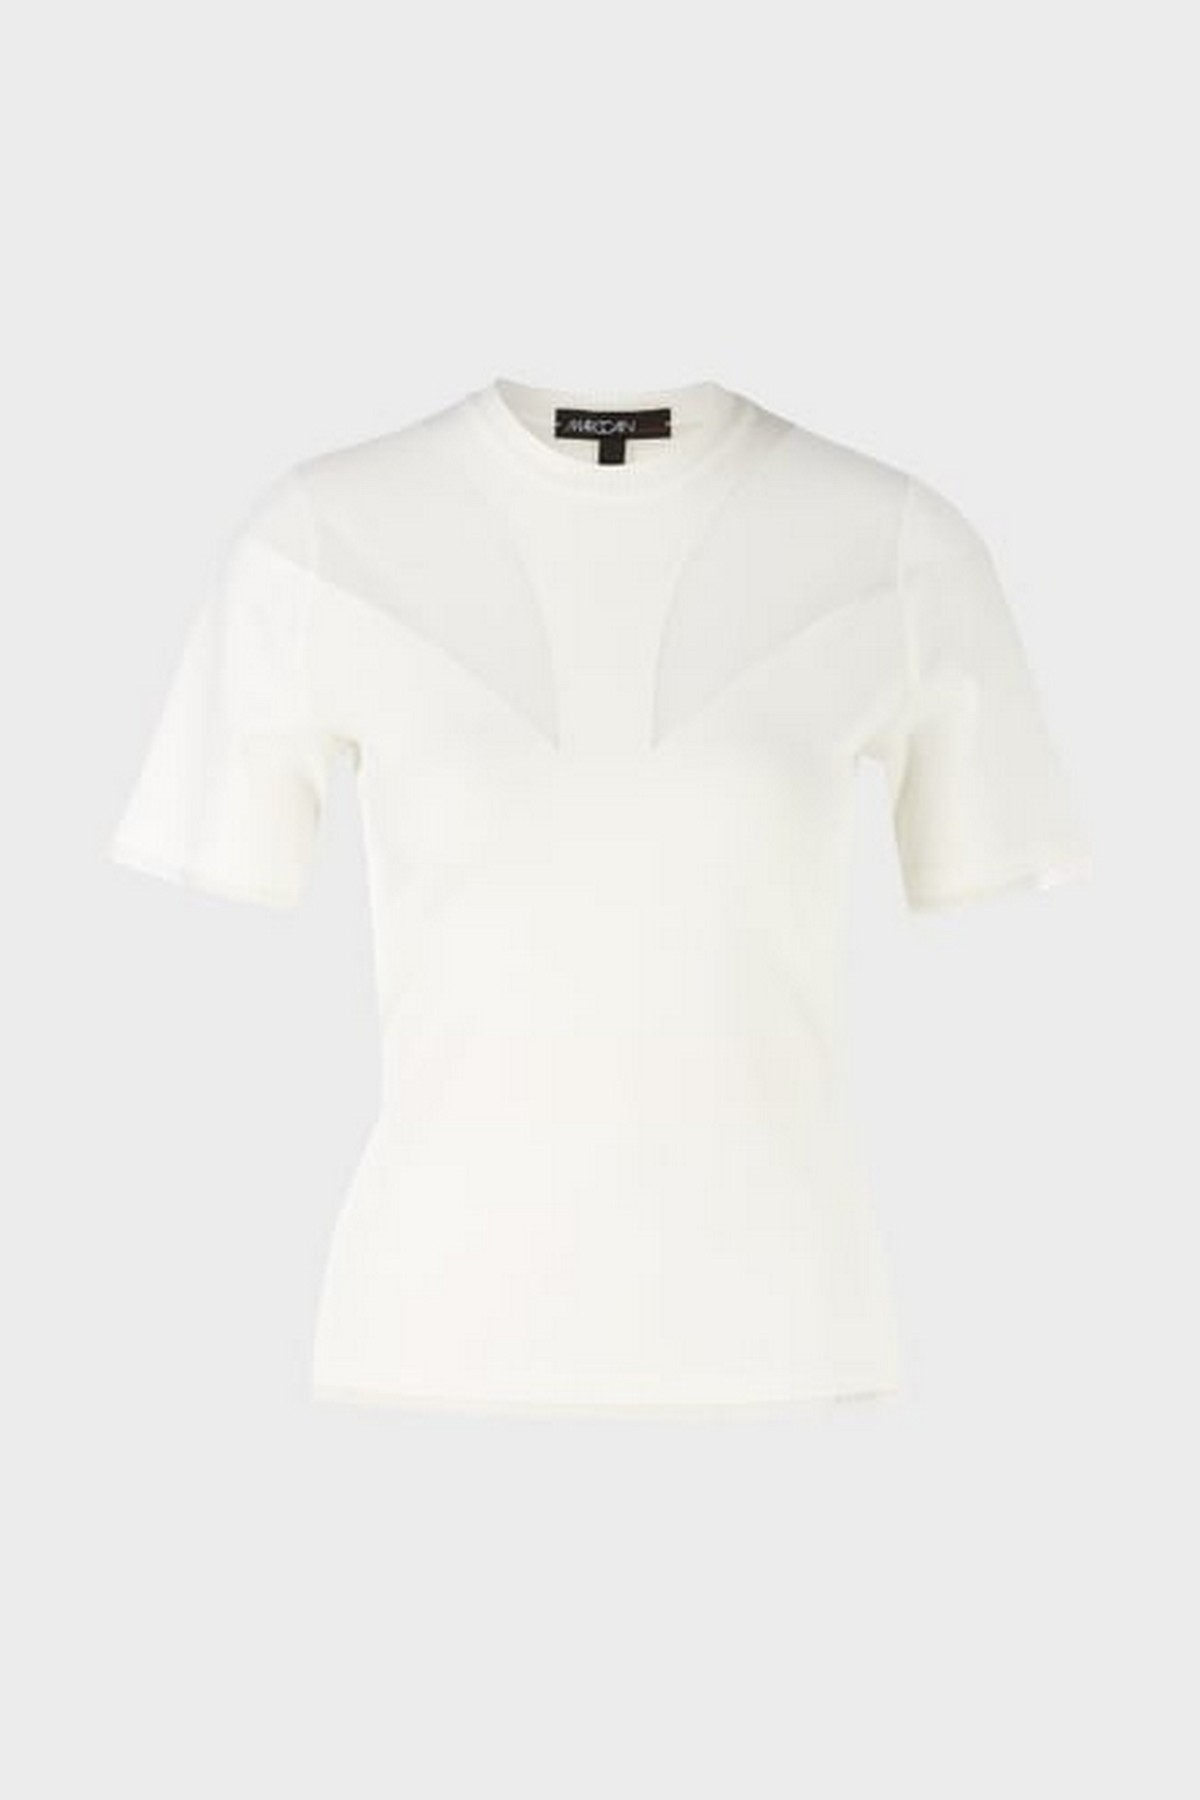 Shirt met organza inzet in de kleur off white van het merk Marc Cain Collections